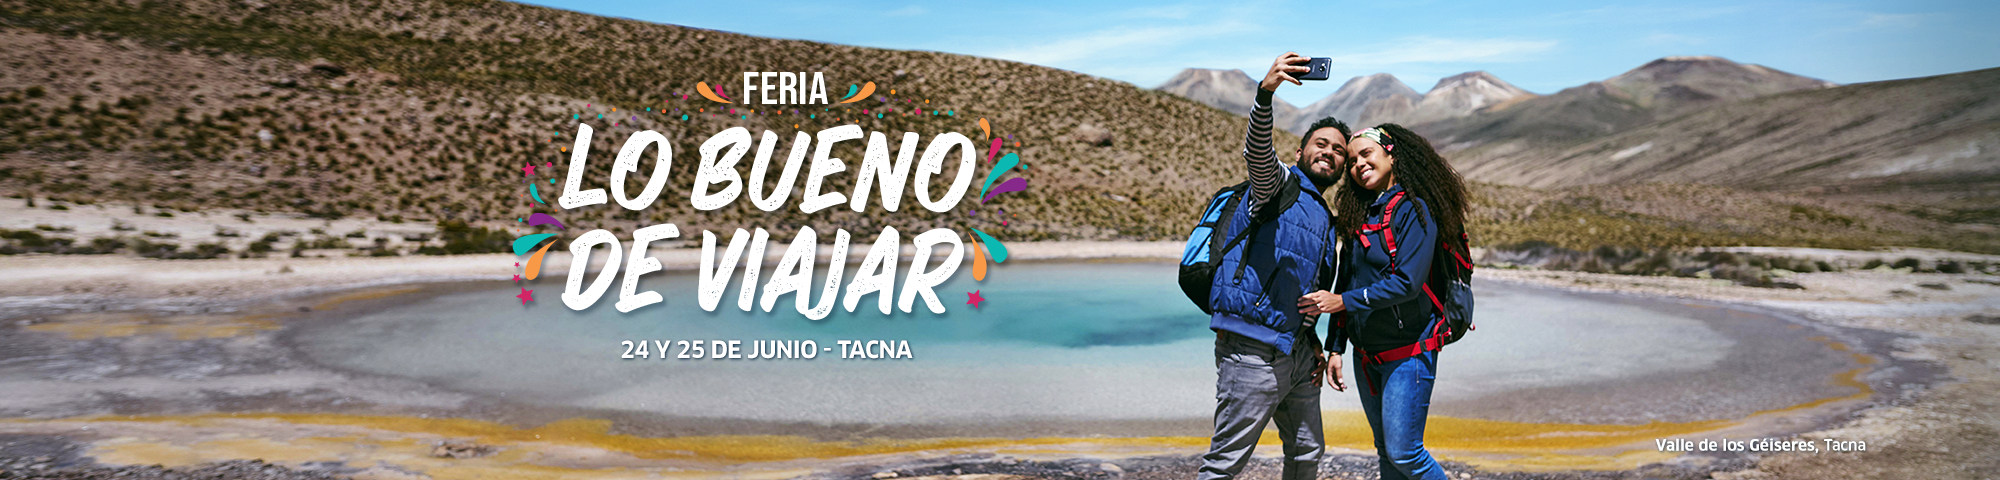 ¡Vuelve la feria “Lo bueno de viajar” a Tacna!